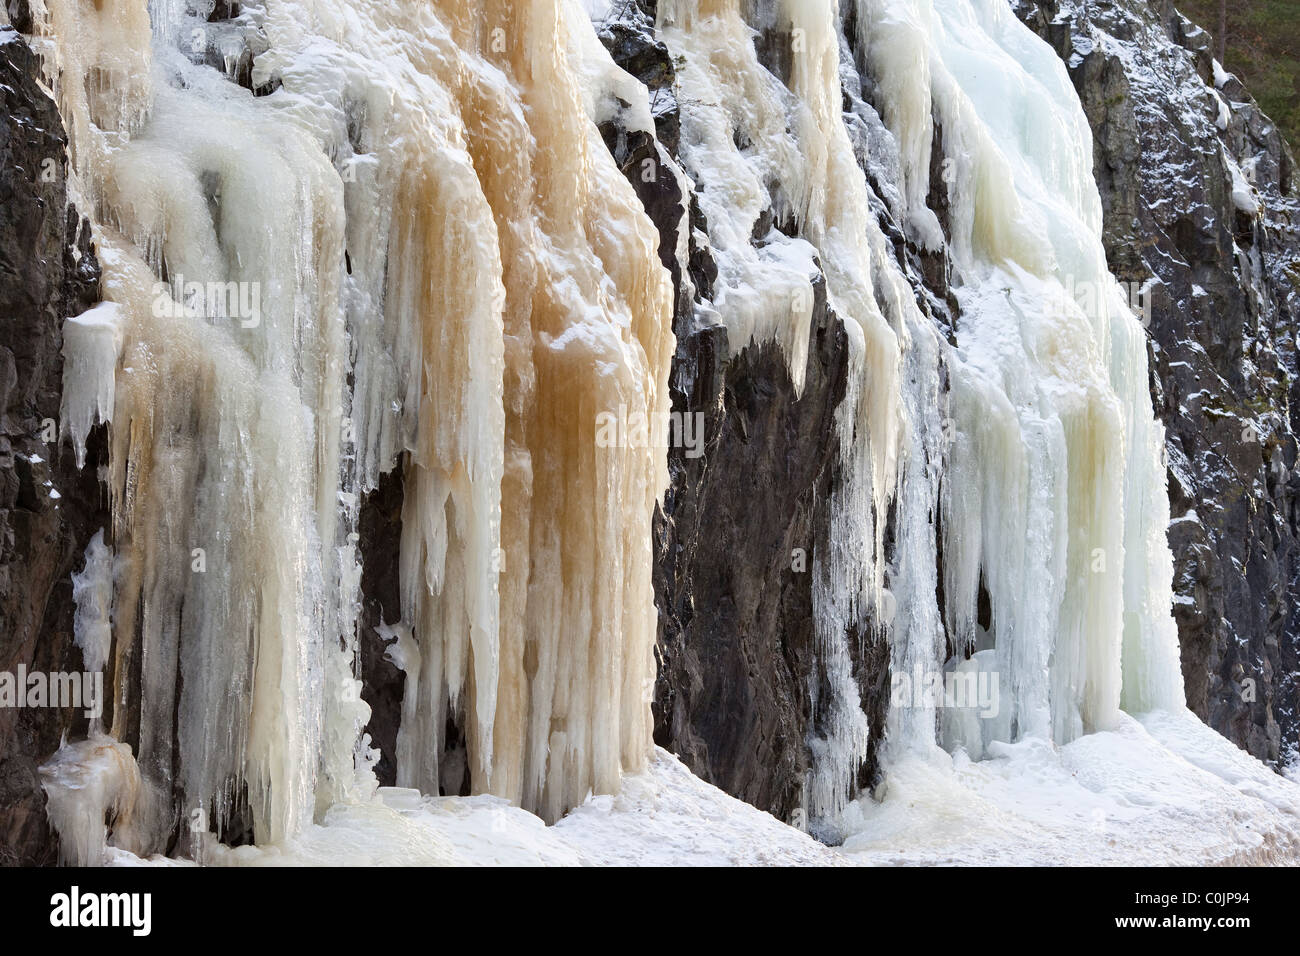 Big ice sculpture on mountain Stock Photo